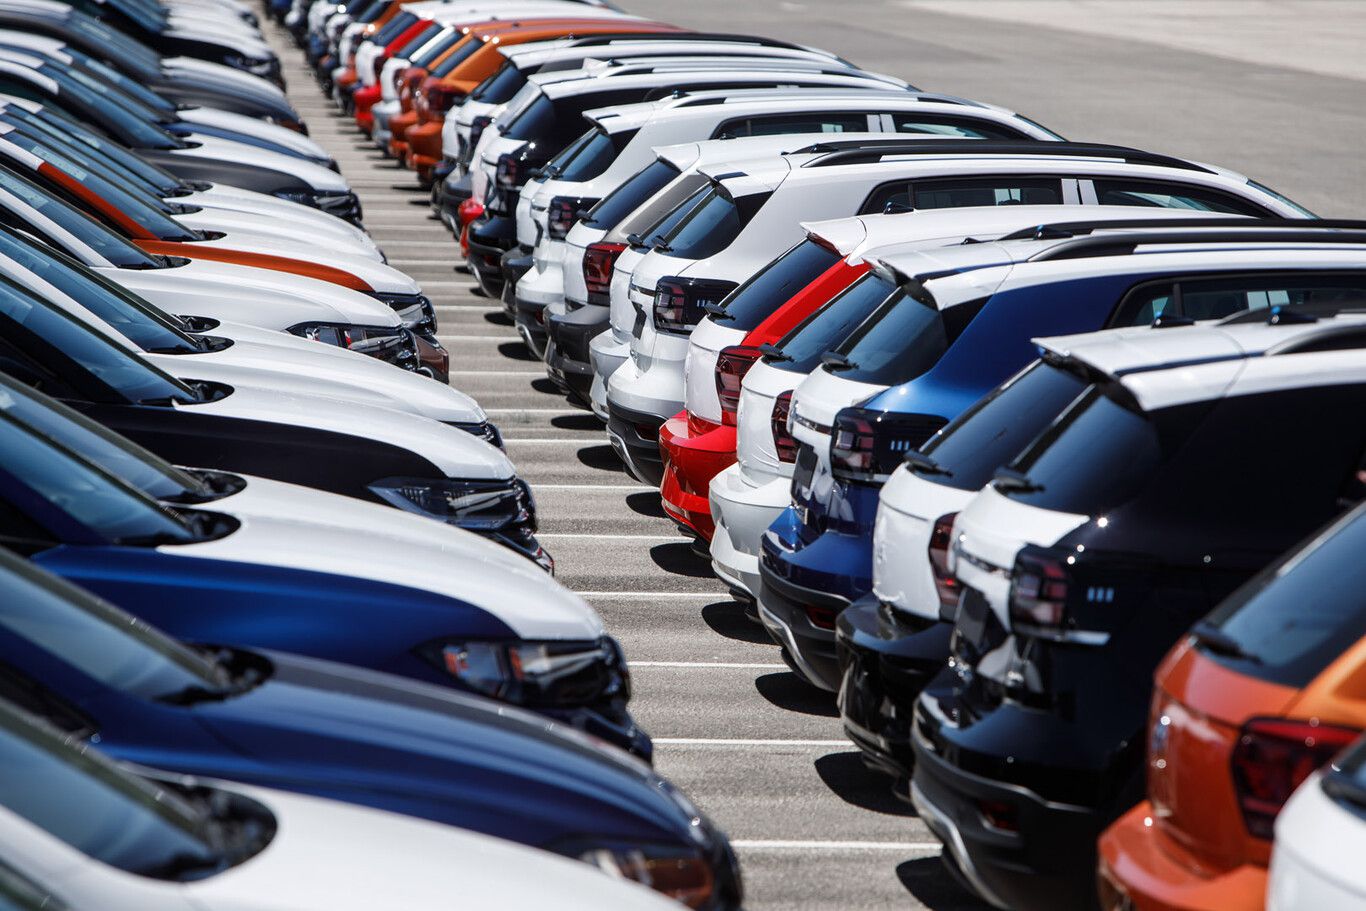 tras 20 meses de bajas, el mercado automotor local levanta cabeza con un alza del 30,6% en las ventas de abril